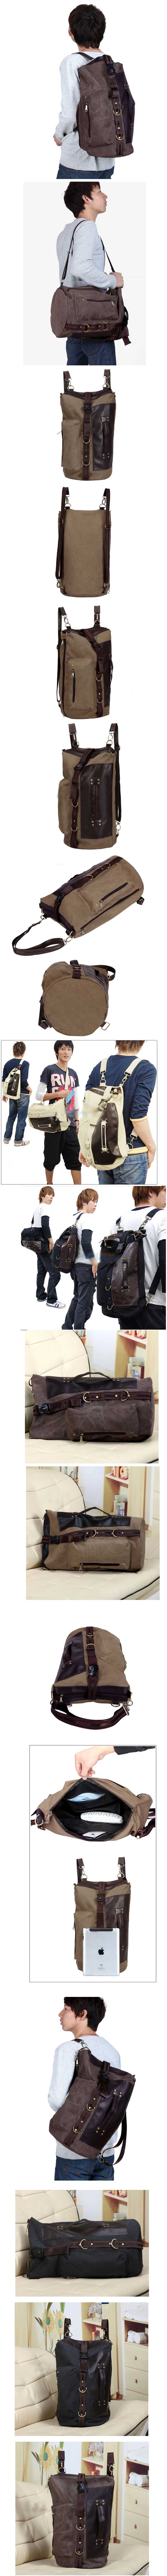 jual tas ransel pria model terbaru multifungsi yang bisa digunakan sebagai tas ransel , tas jinjing atau tas selempang